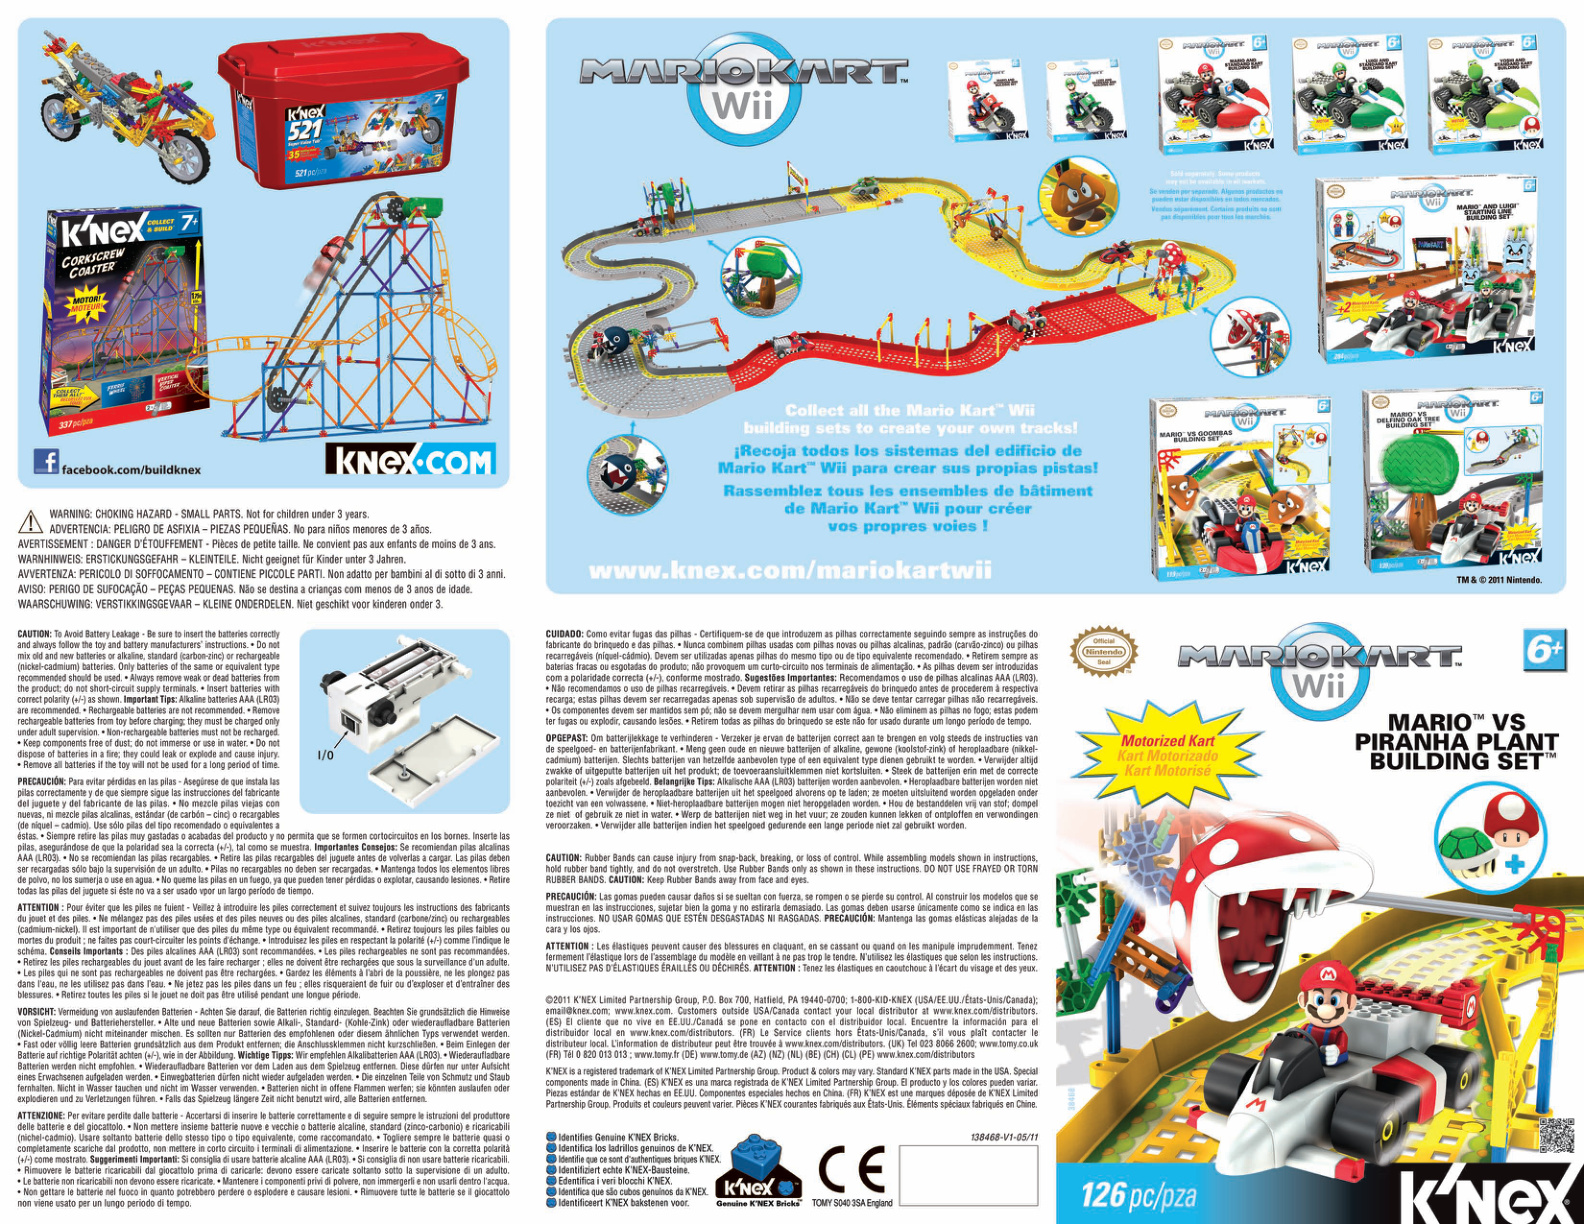 Nintendo Mario Kart Mario vs Piranha Plant 38468